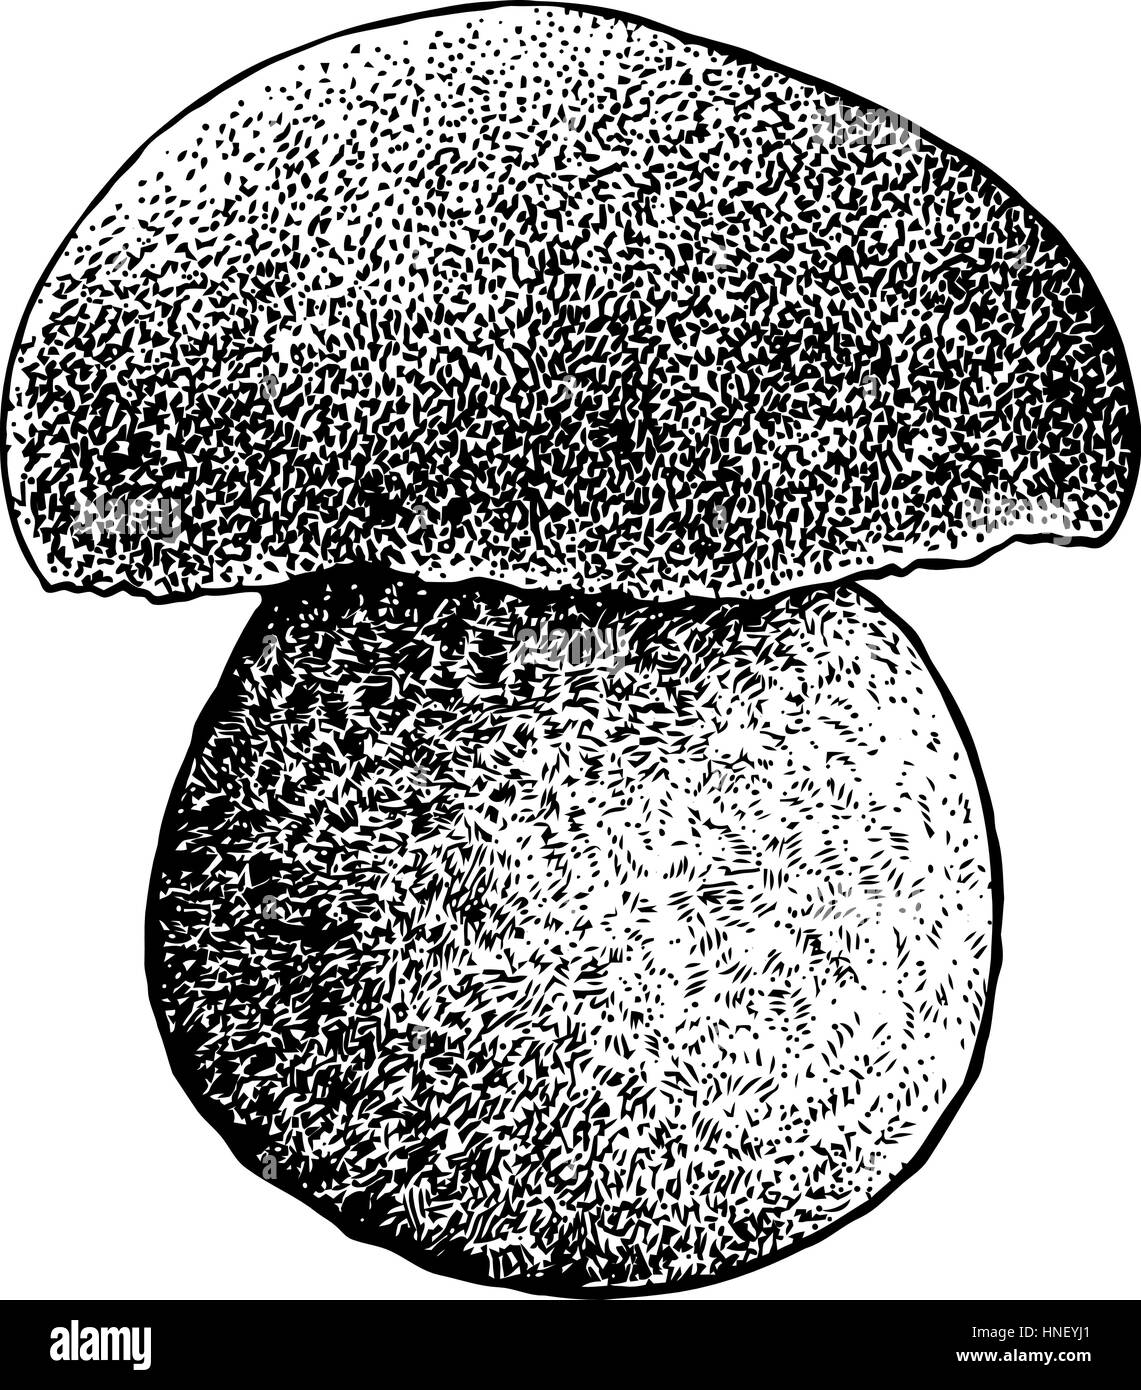 Steinpilze Pilze Illustration, Zeichnung, Gravur, Strichzeichnungen Stock Vektor